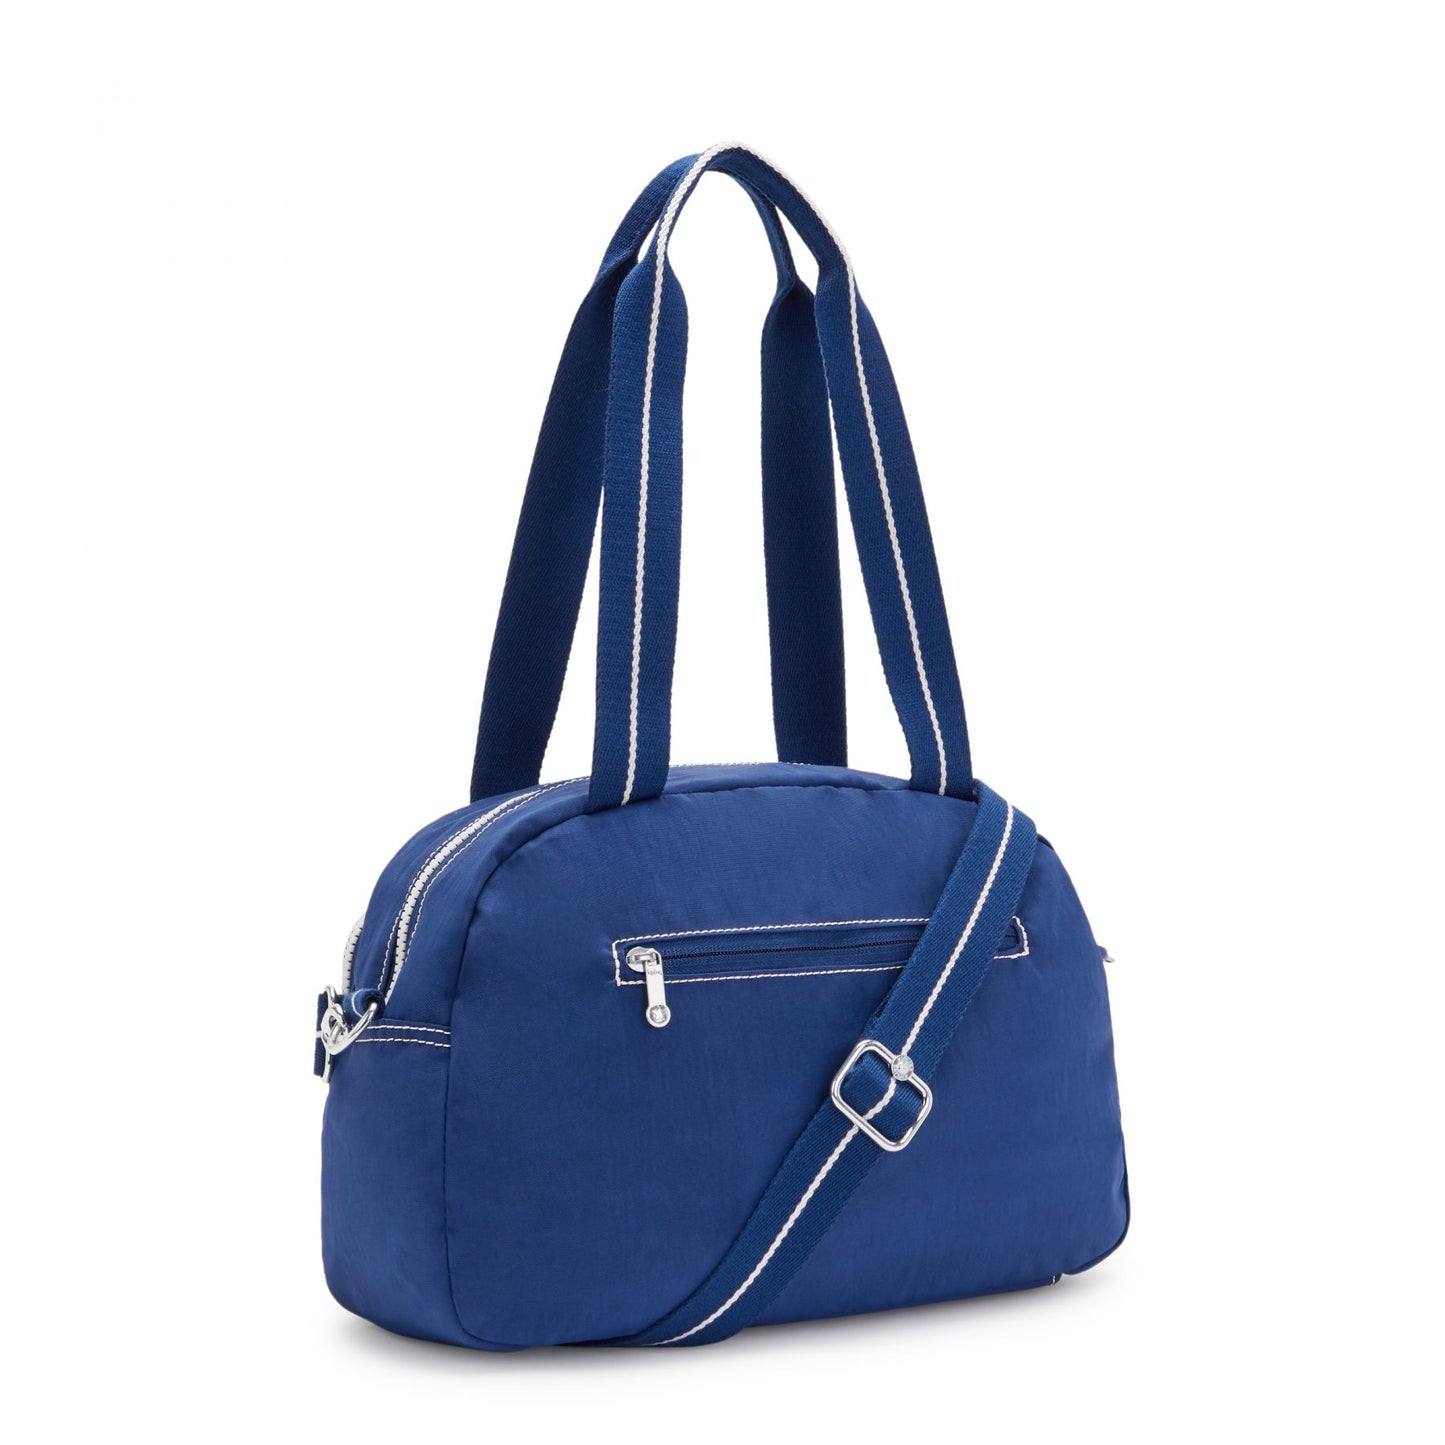 Kipling Cool Defea Shoulder Bag in Admiral Blue